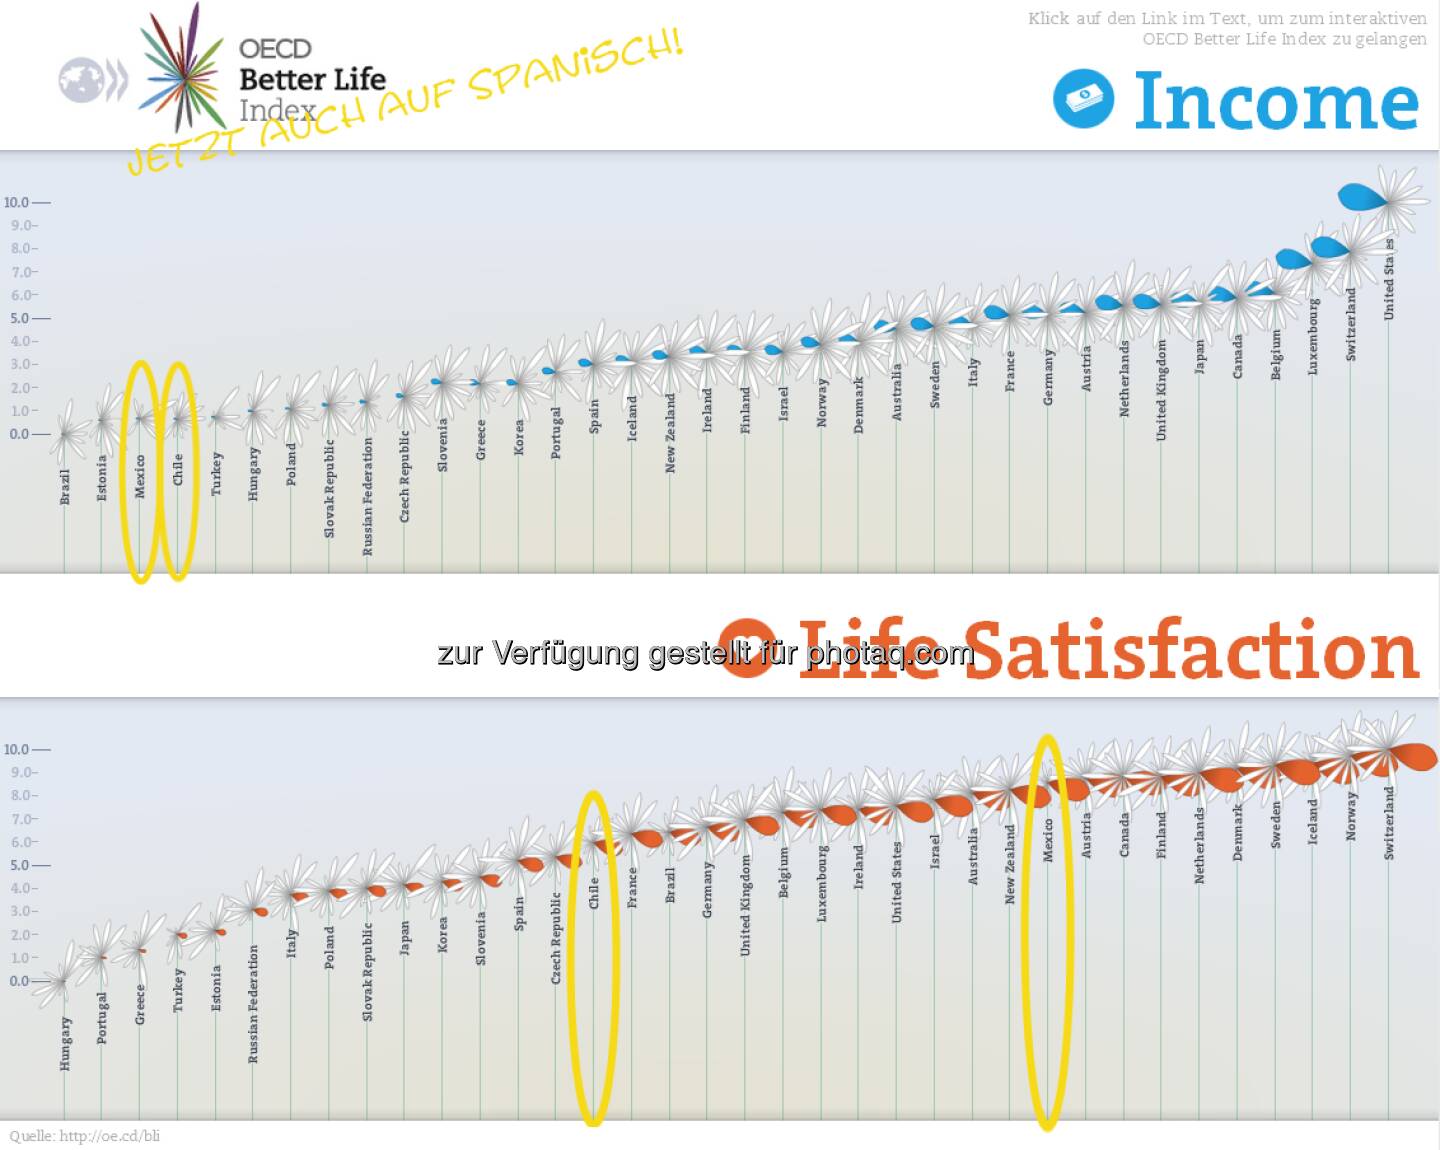 Geldlos glücklich: Chile und Mexiko liegen bei Verdienst und Vermögen auf den hintersten Plätzen der OECD. Dennoch sind die Menschen dort zufriedener mit ihrem Leben als in vielen anderen OECD-Ländern.

Was ist Dir im Leben am wichtigsten? Sag es uns via 'Your Better Life Index': http://www.oecdbetterlifeindex.org/